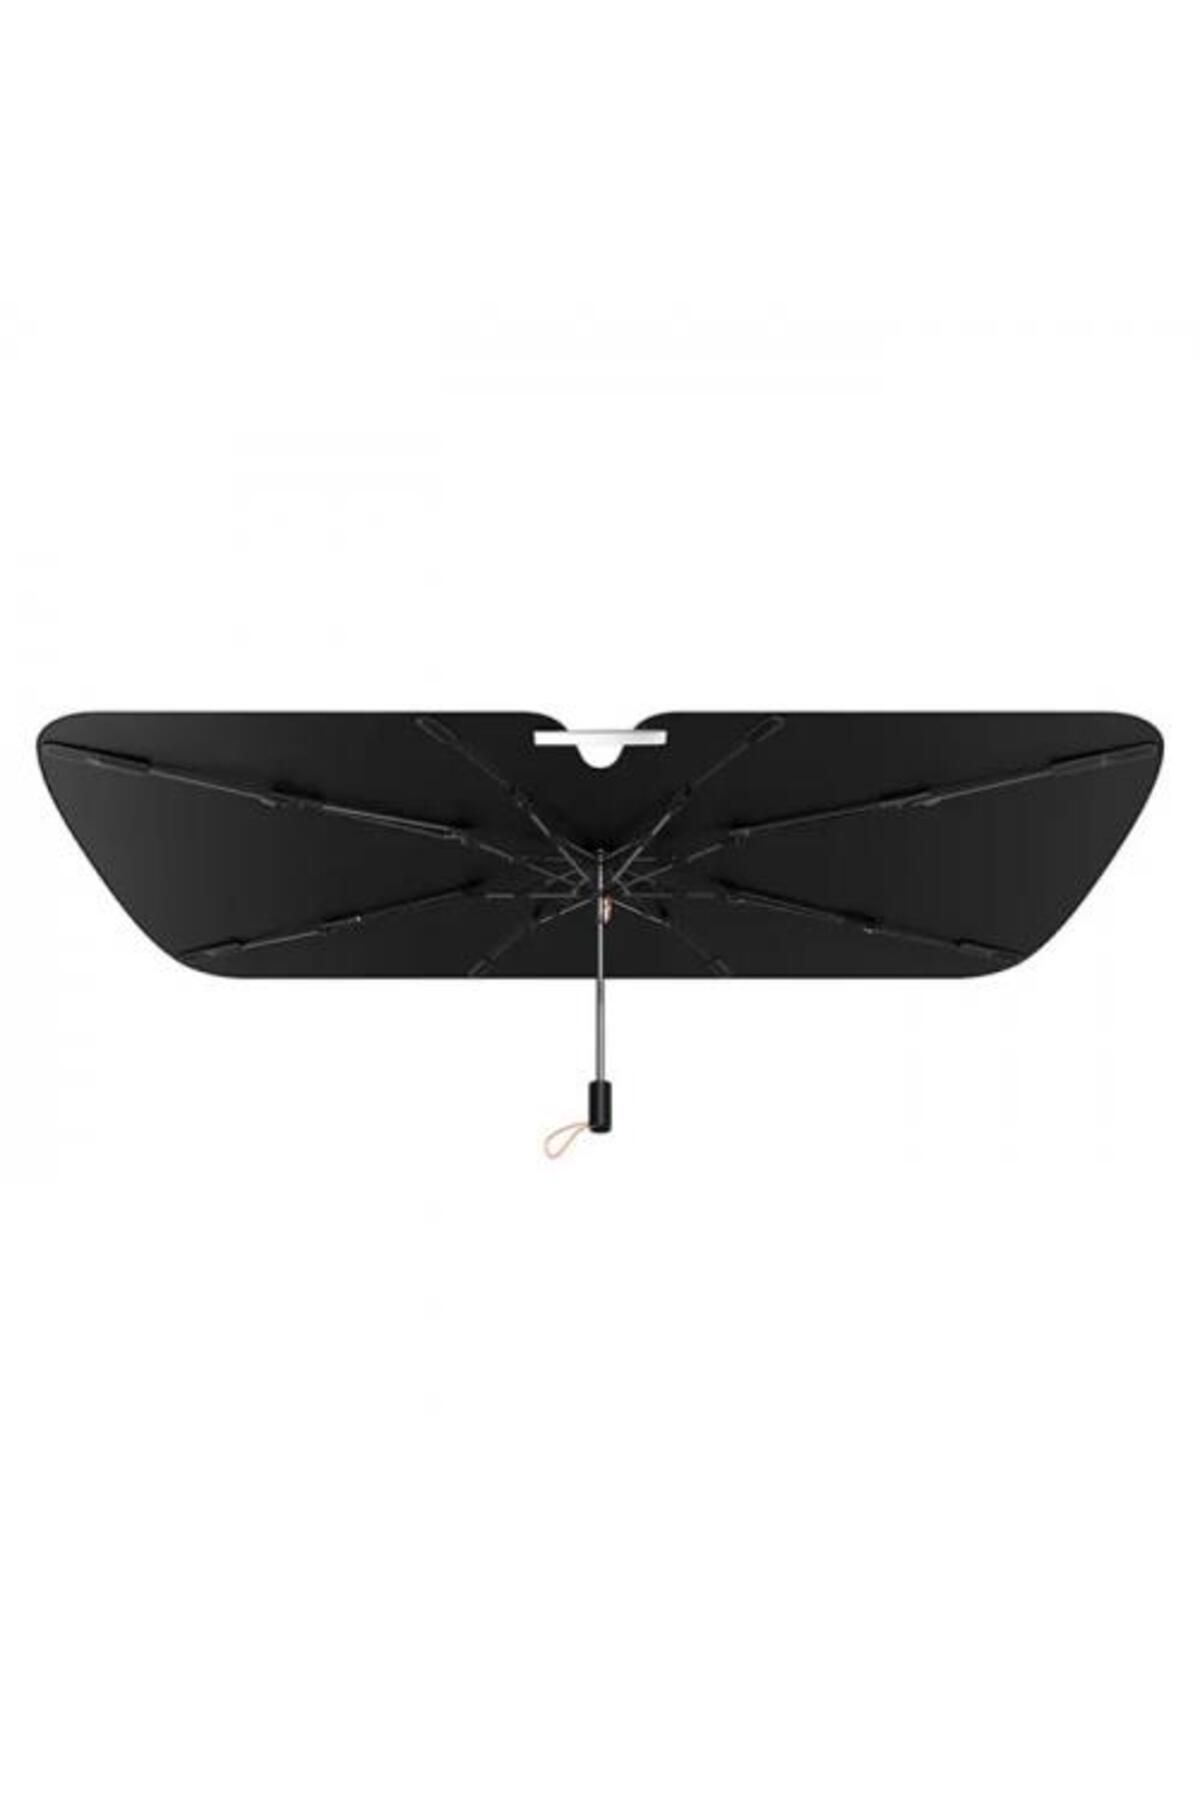 Baseus 3 Katmanlı Yarasa Kanat Tasarımlı Çantalı 131cm*79cm Araç Ön Cam Güneşlik Şemsiyesi Araç Koru